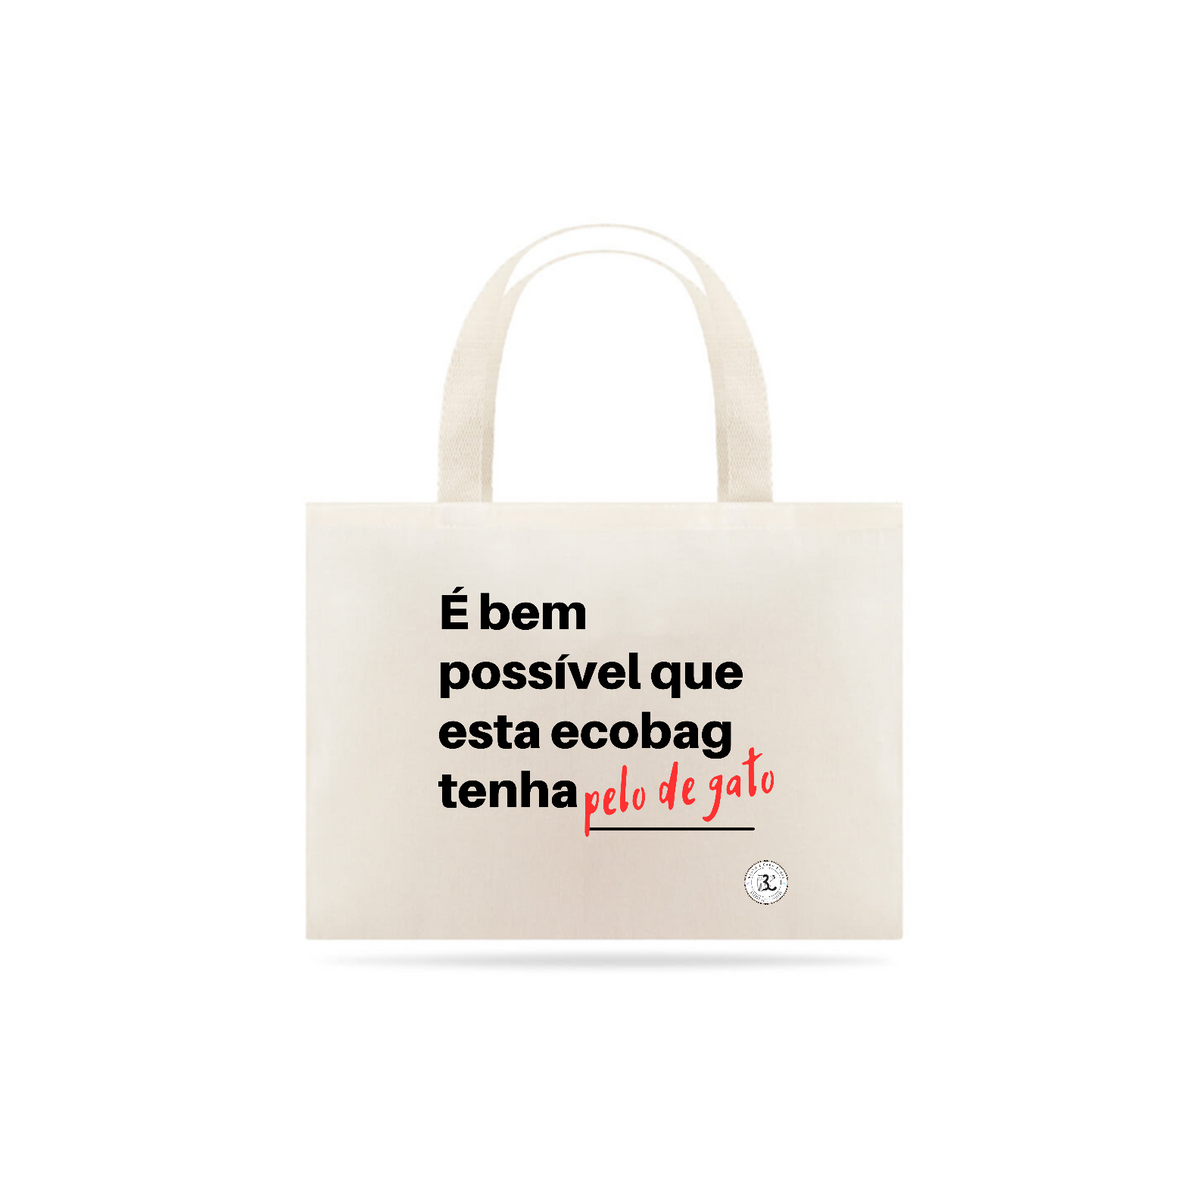 Nome do produto: Ecobag - É bem possível